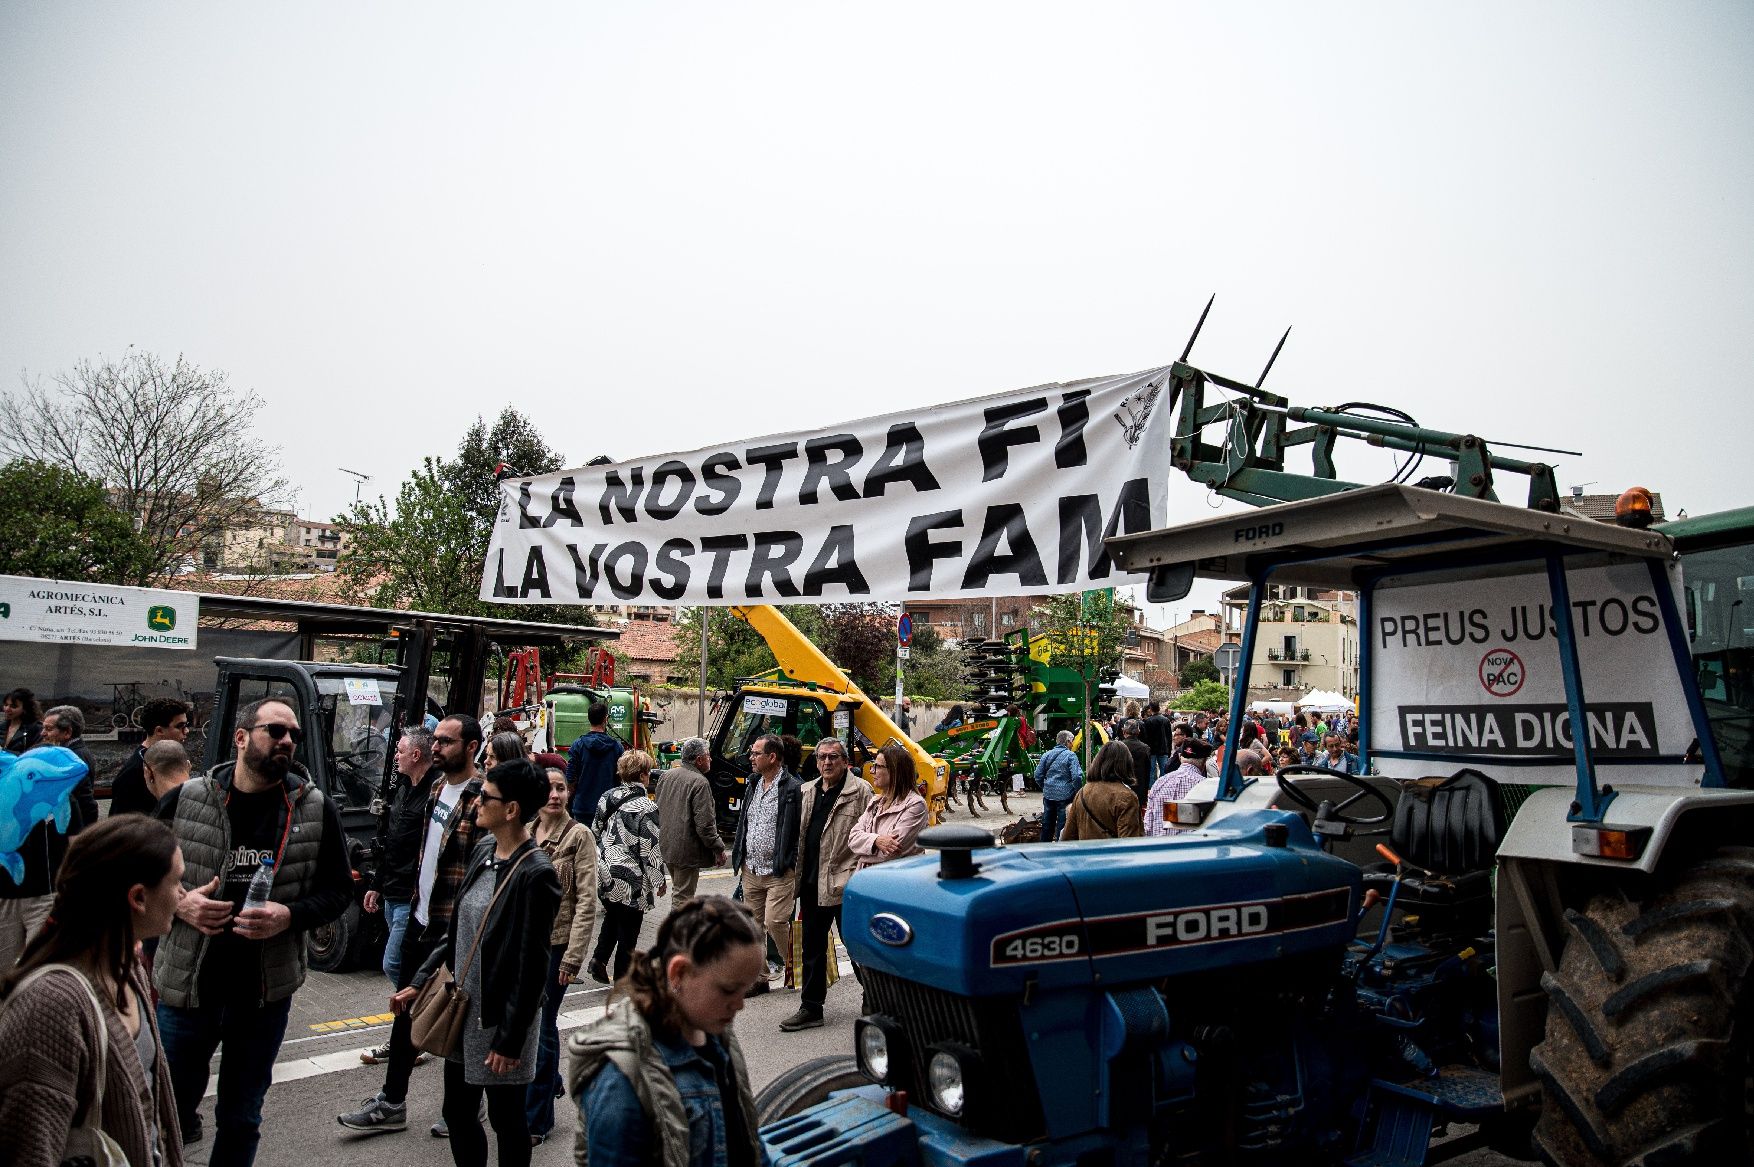 La 63e Fira d'Artés omple el poble de gent, cotxes i tractors